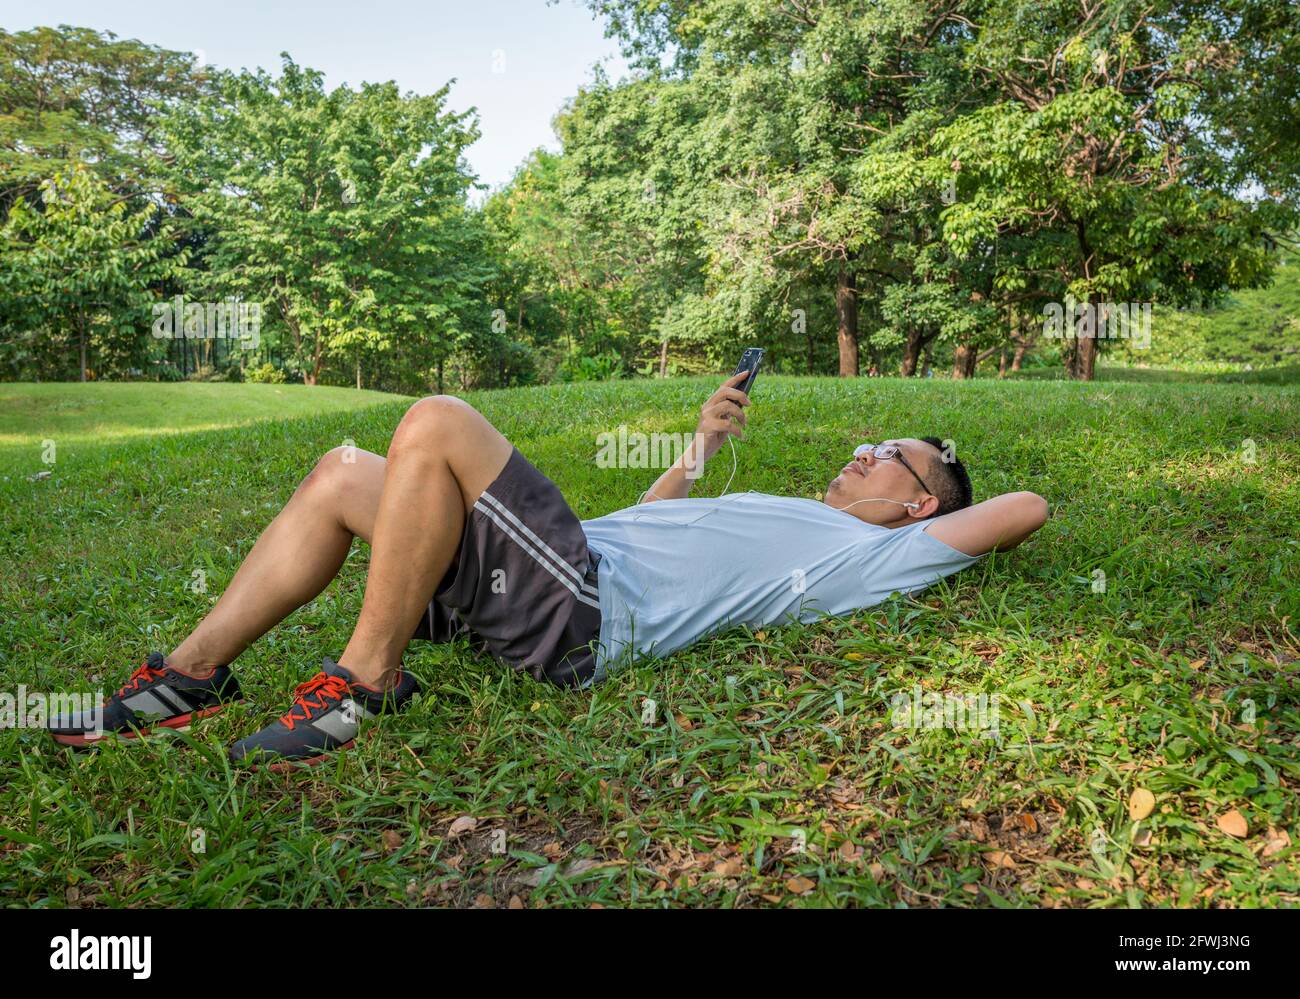 Der asiatische Jogger mittleren Alters legte sich in einem öffentlichen Park auf den Rasen und benutzte ein Mobiltelefon mit Kopfhörer. Stockfoto